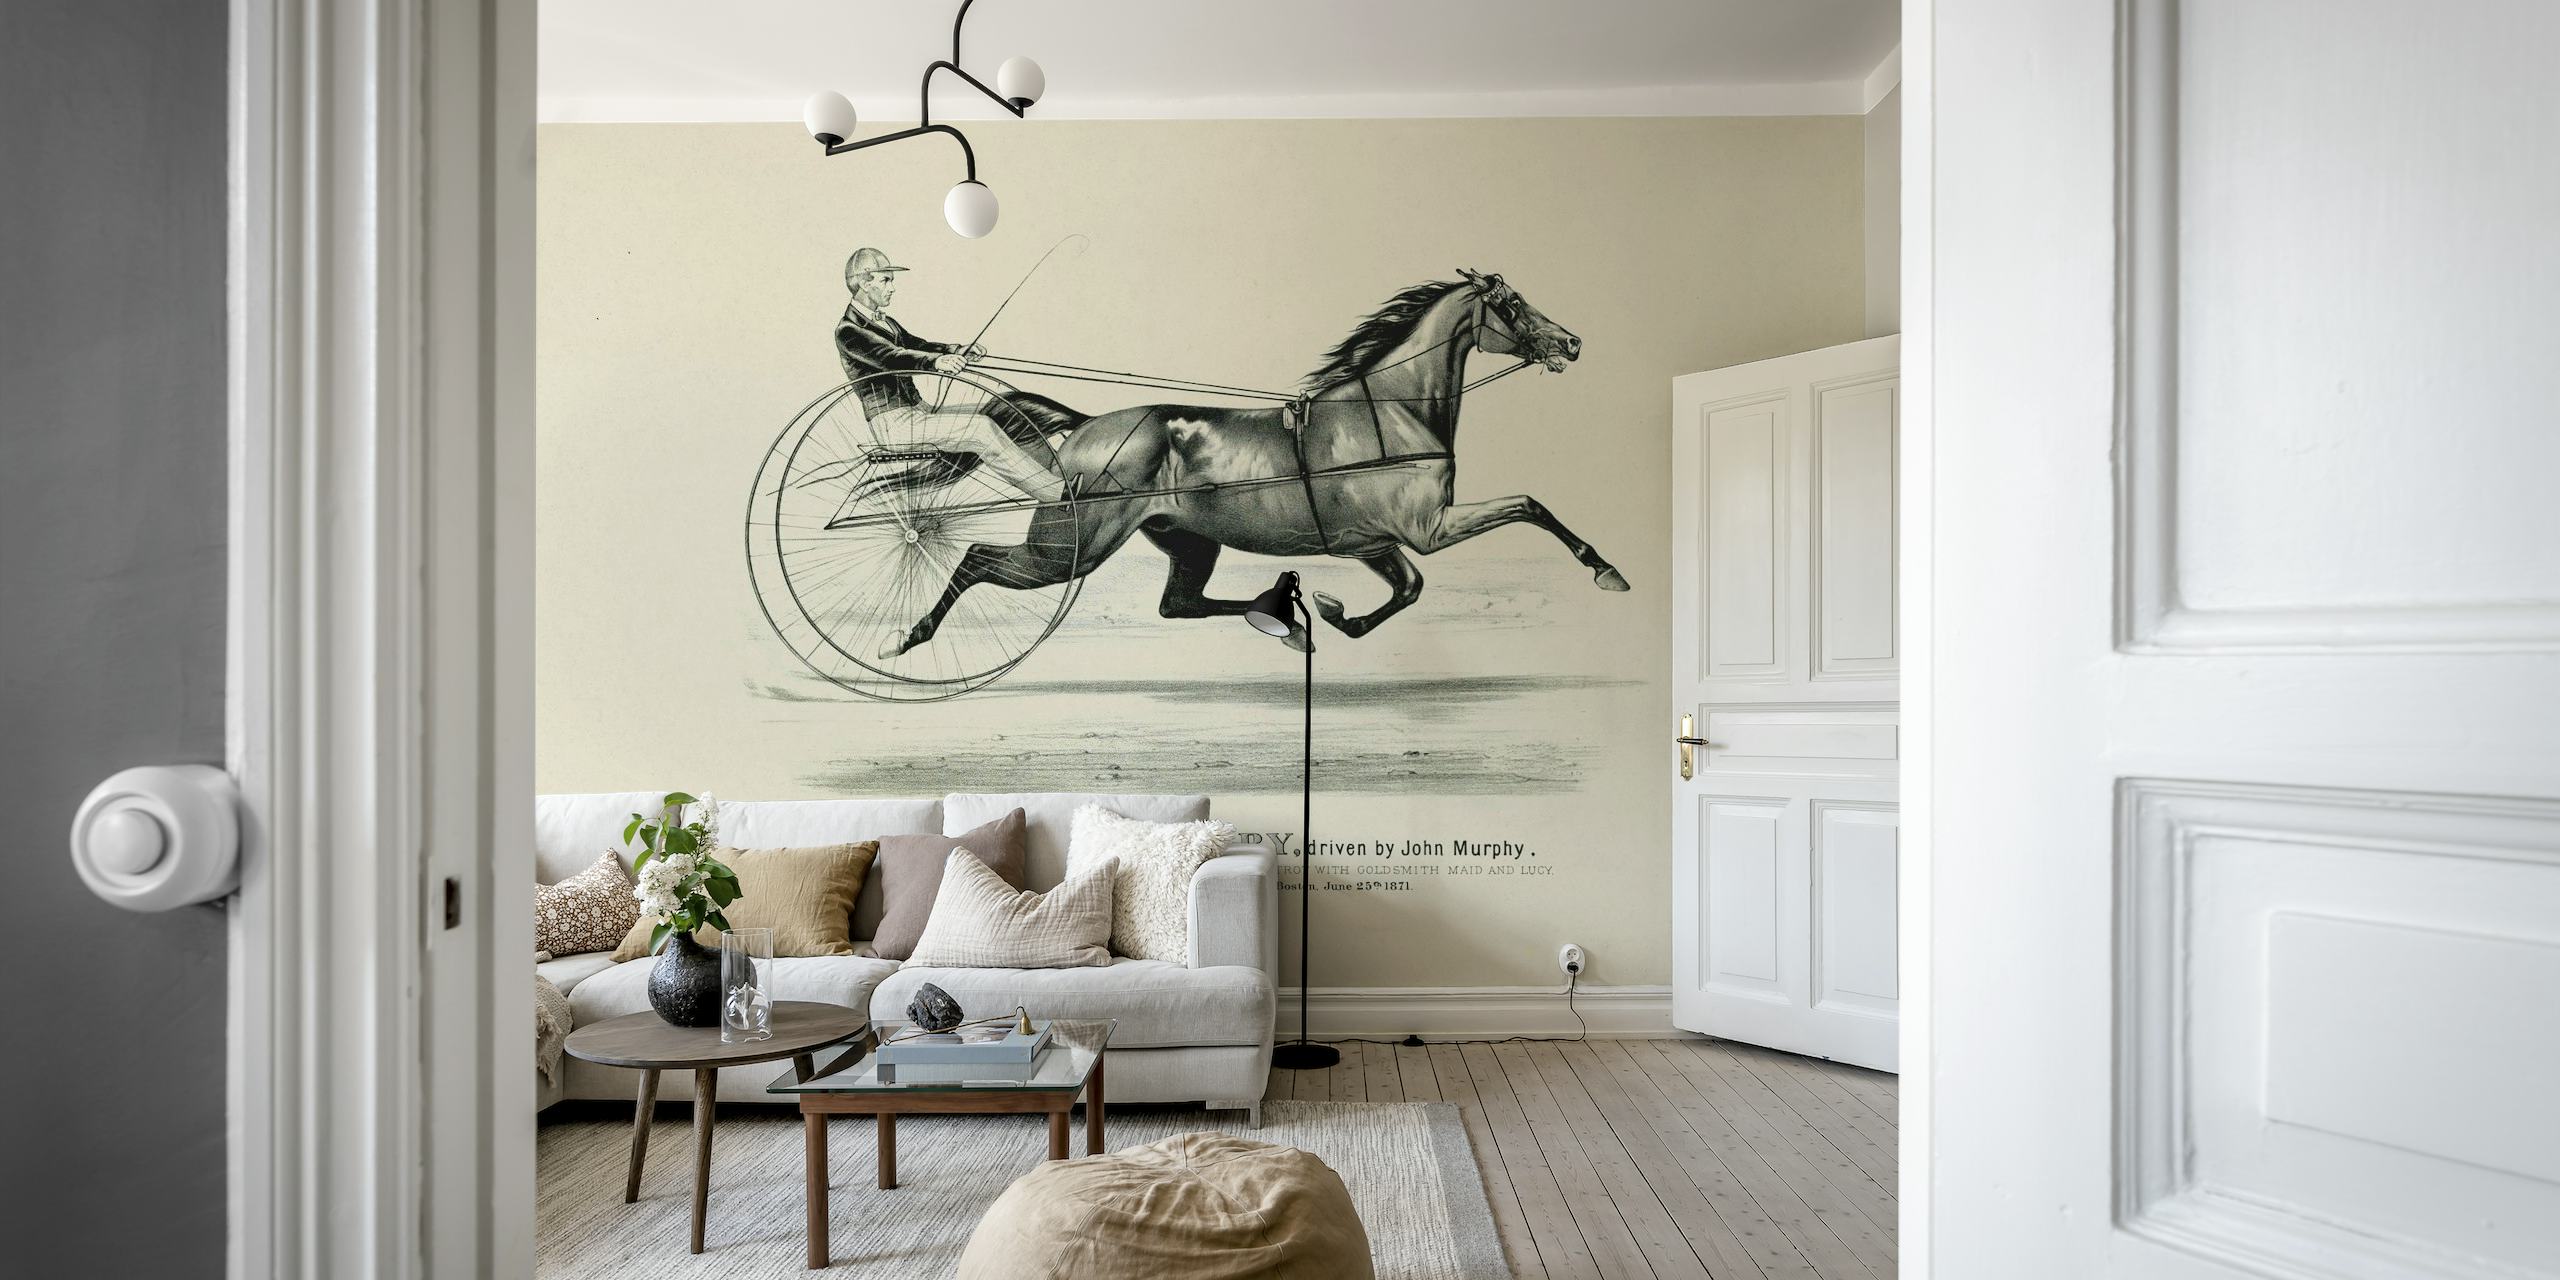 Historische paardrijkunstmuurschildering met een paard en ruiter in klassieke stijl.